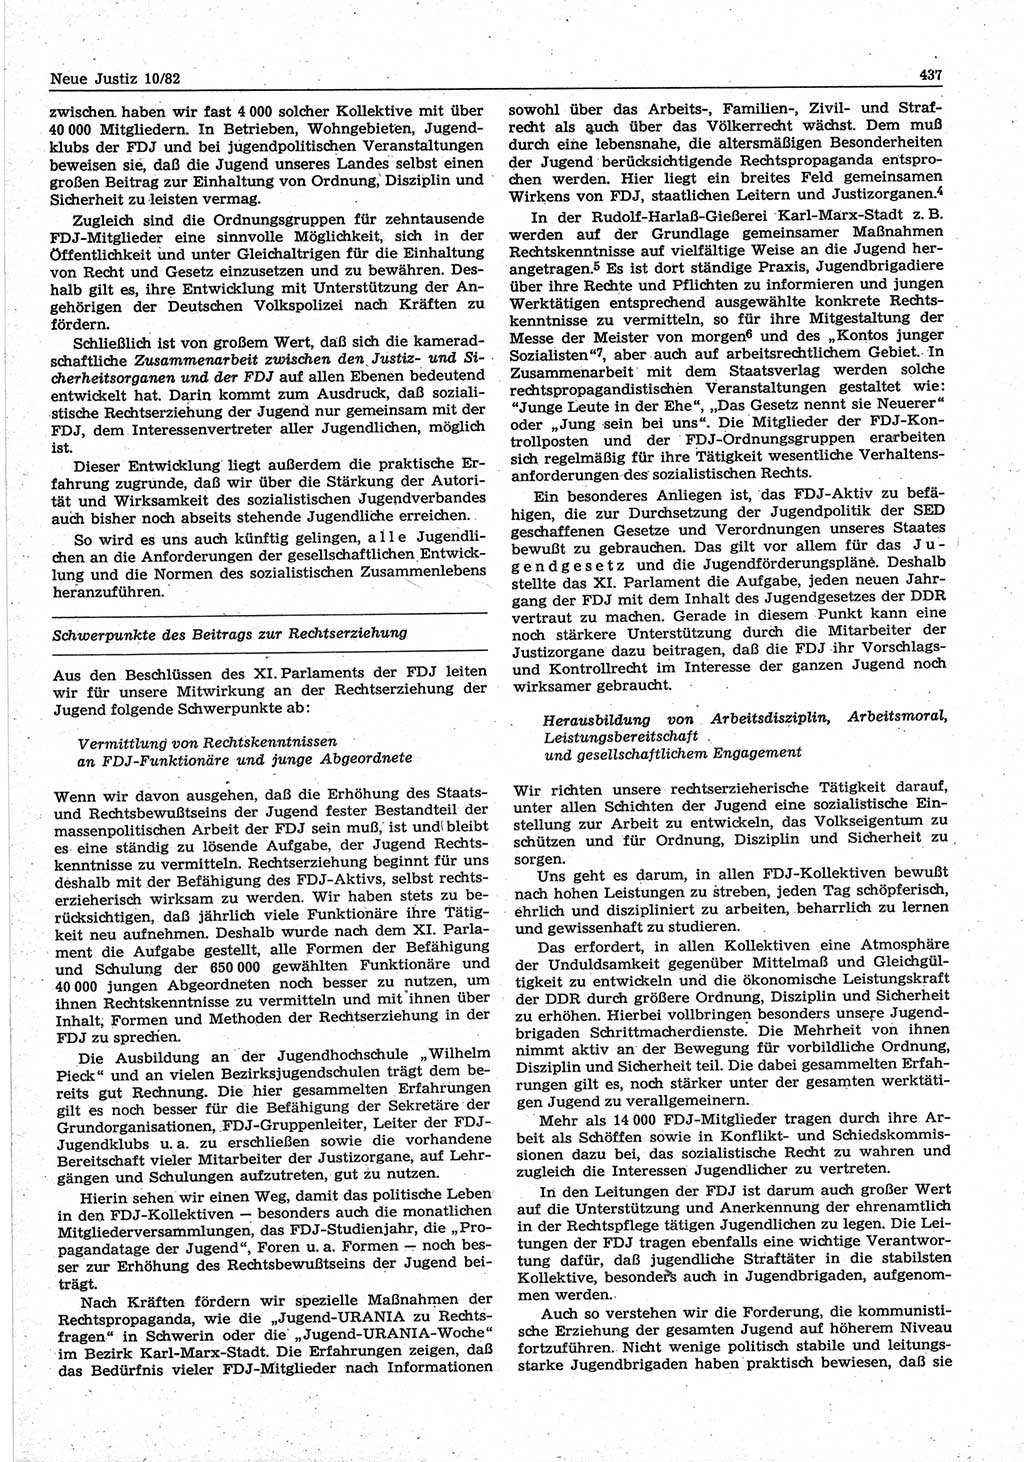 Neue Justiz (NJ), Zeitschrift für sozialistisches Recht und Gesetzlichkeit [Deutsche Demokratische Republik (DDR)], 36. Jahrgang 1982, Seite 437 (NJ DDR 1982, S. 437)